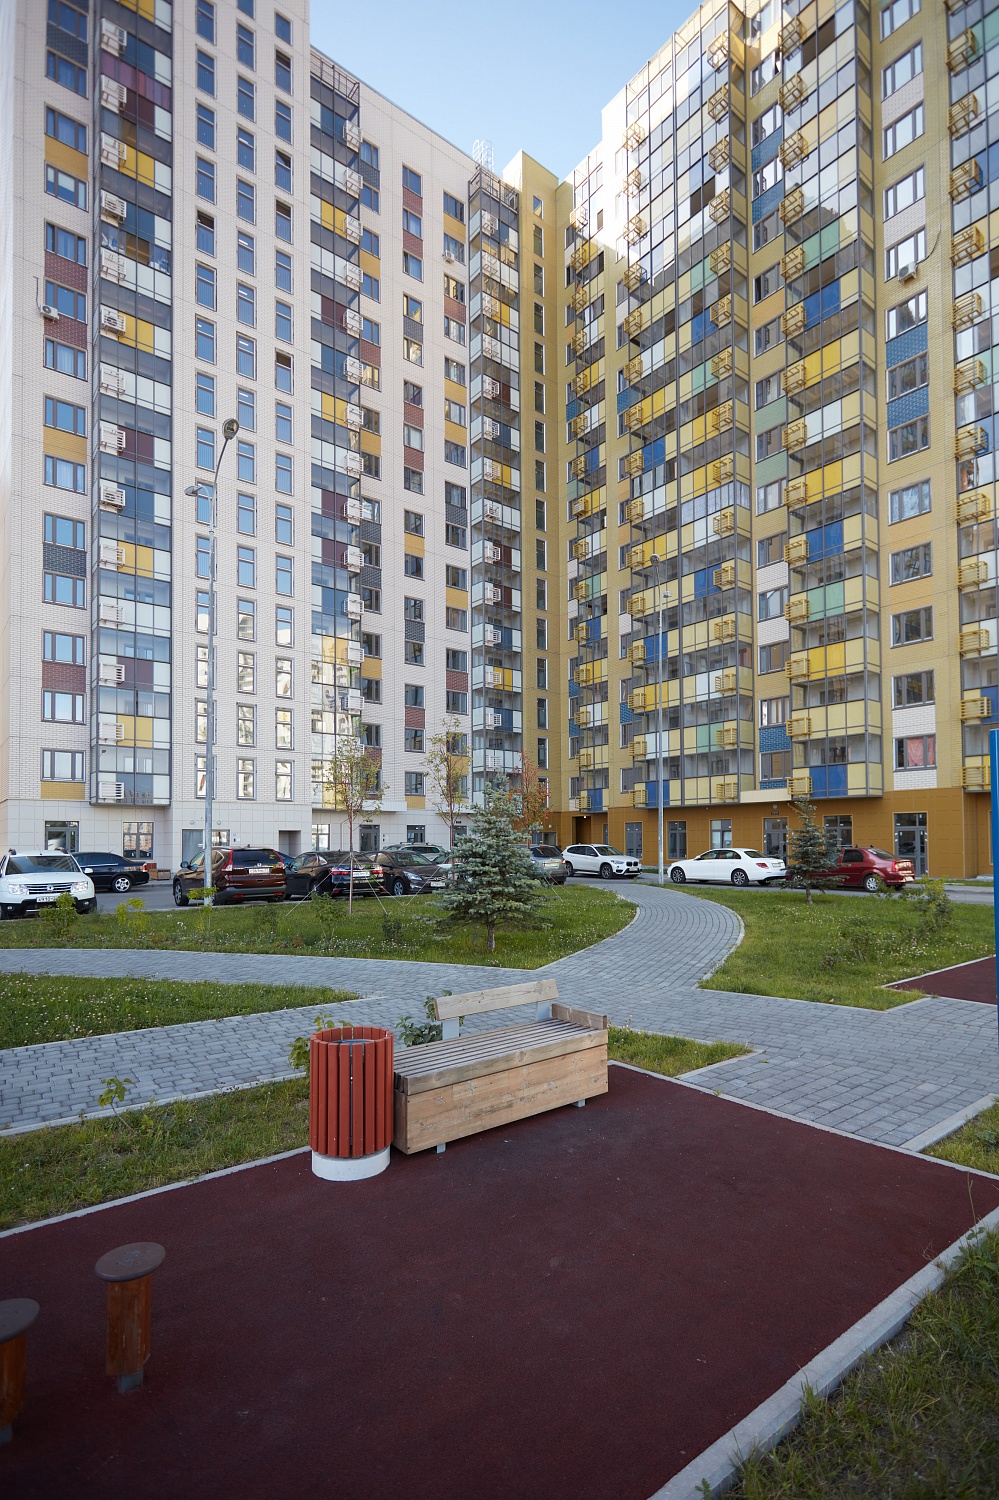 Жилые дома ул. Вертолетчиков, Москва, 2020 г.